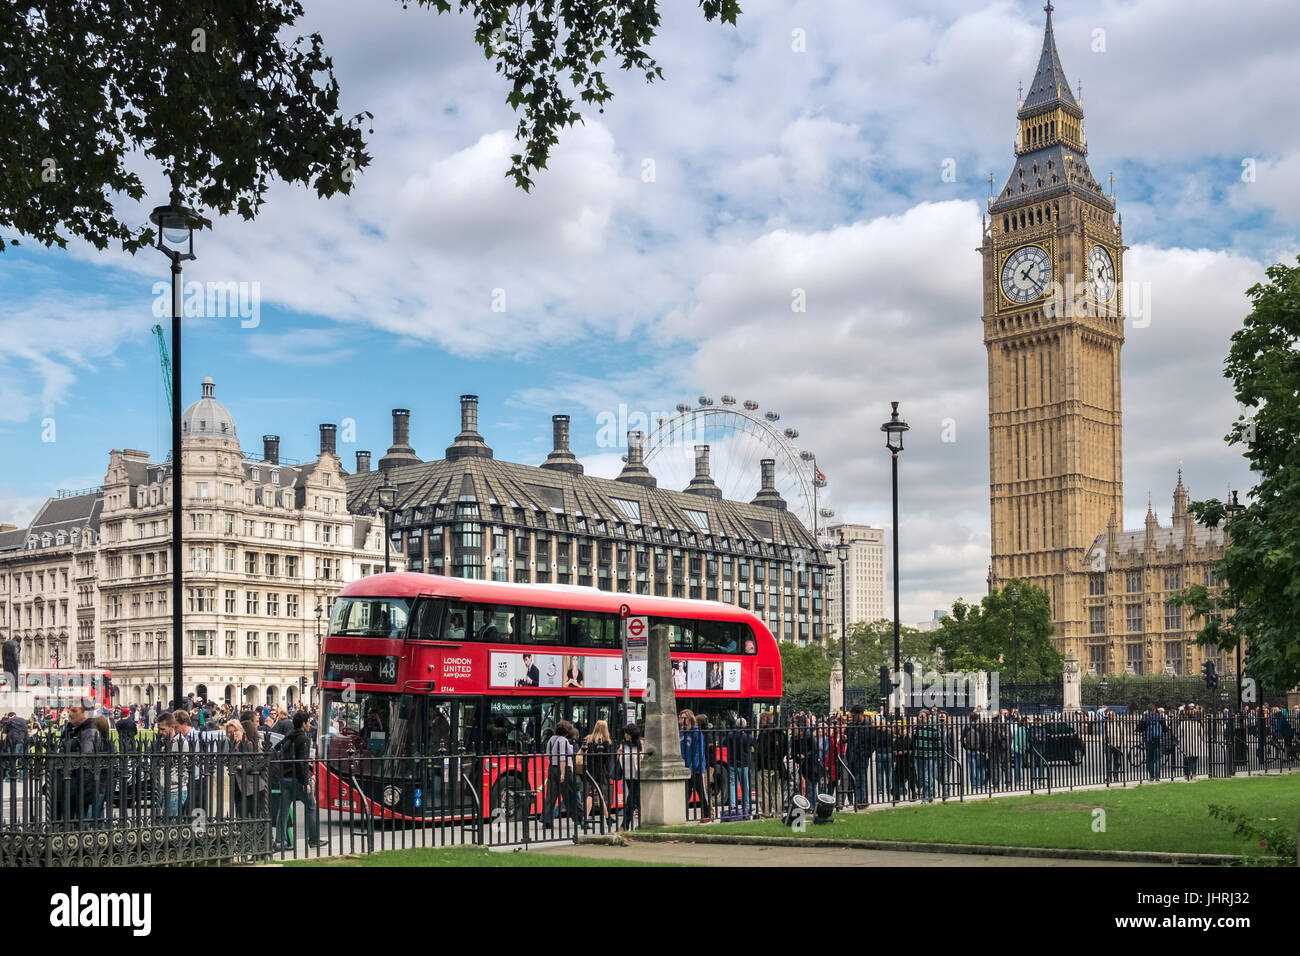 Ocupado multitudes en la Plaza del Parlamento, Big Ben y una red de autobuses de Londres, Westminster, London, England, Reino Unido Foto de stock